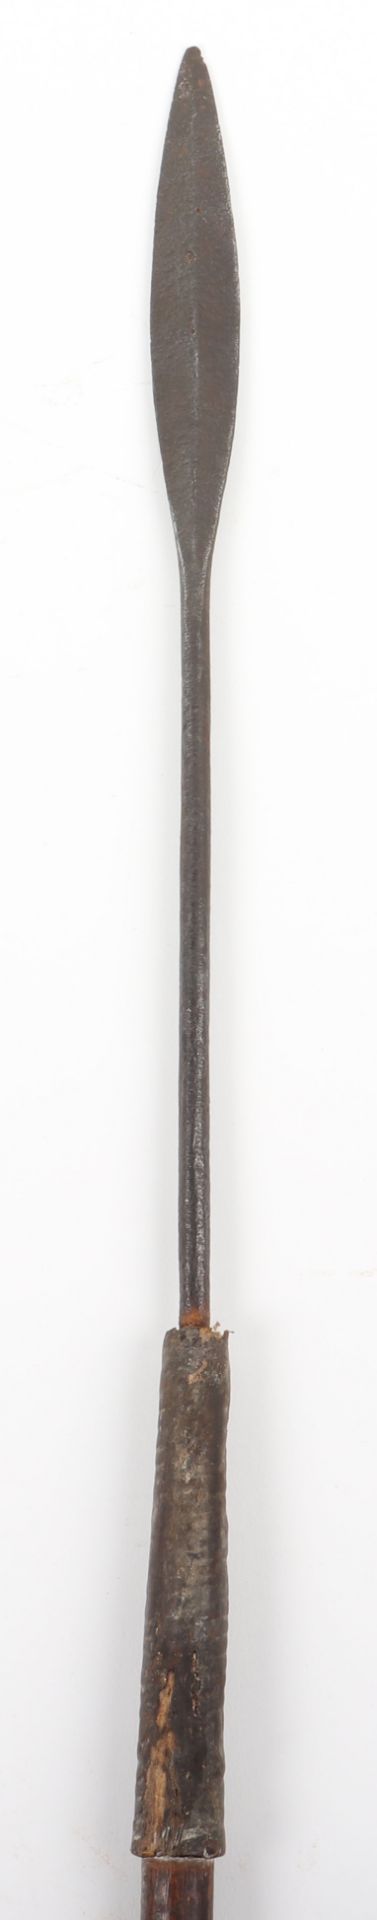 Zulu Throwing Spear Assegai, c.1870